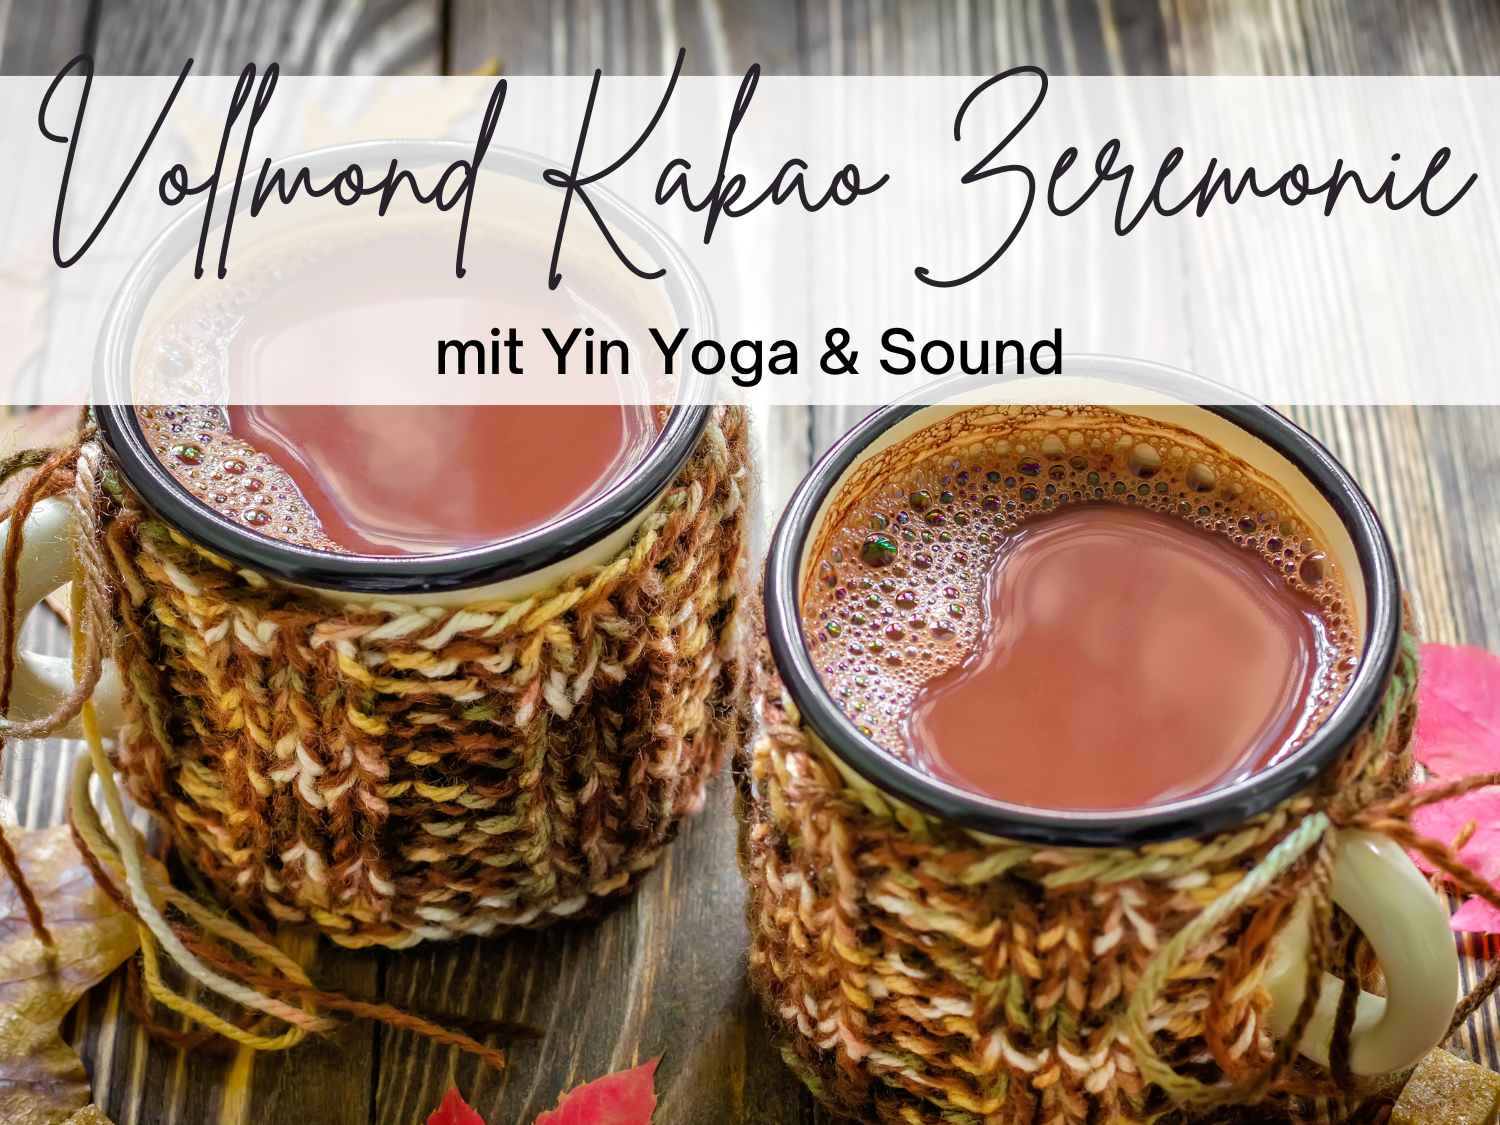 Vollmond Kakao Zeremonie mit Yin Yoga und Sound Healing